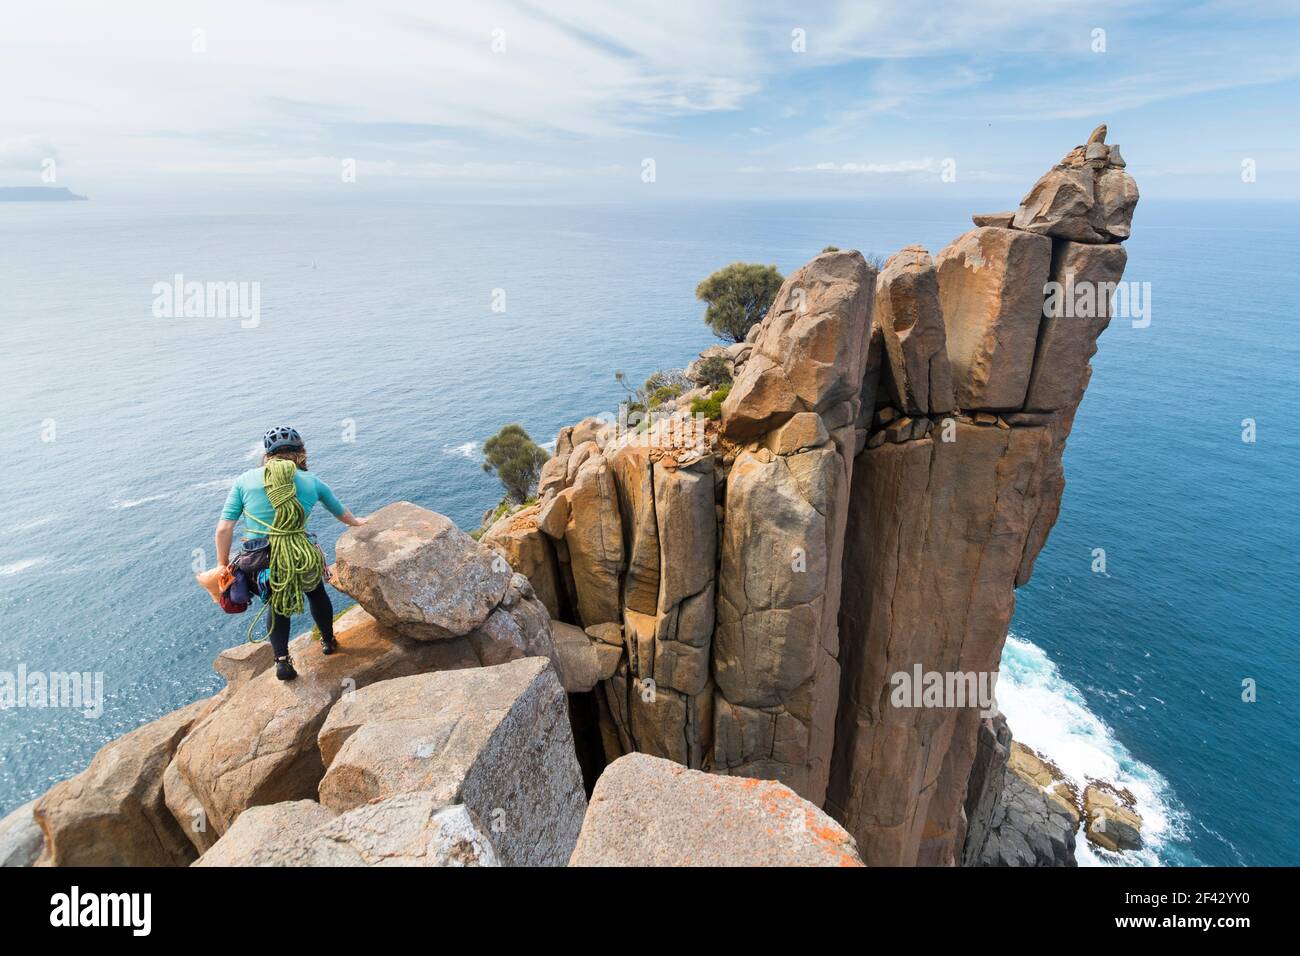 Die Abenteurerin geht mit Seilen und Kletterausrüstung in die unbekannte Welt, während sie Dolerit-Felskolonnen in den Meeresklippen von Cape Raoul in Tasmanien, Australien, erkundet. Stockfoto